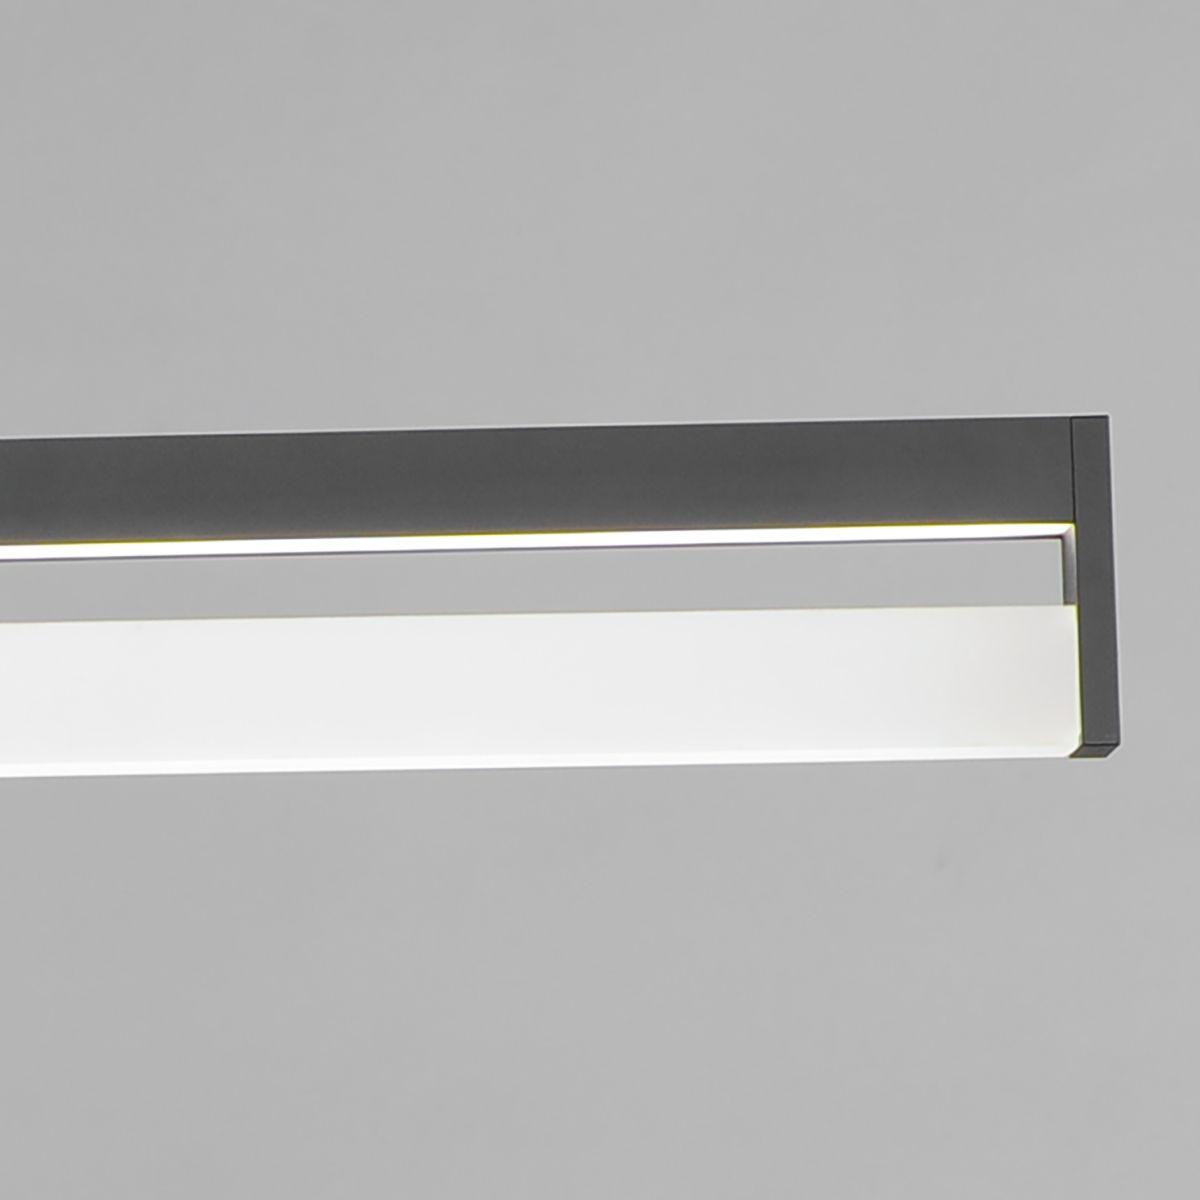 Crossbar 48 in. Smart LED Pendant Light Black Finish